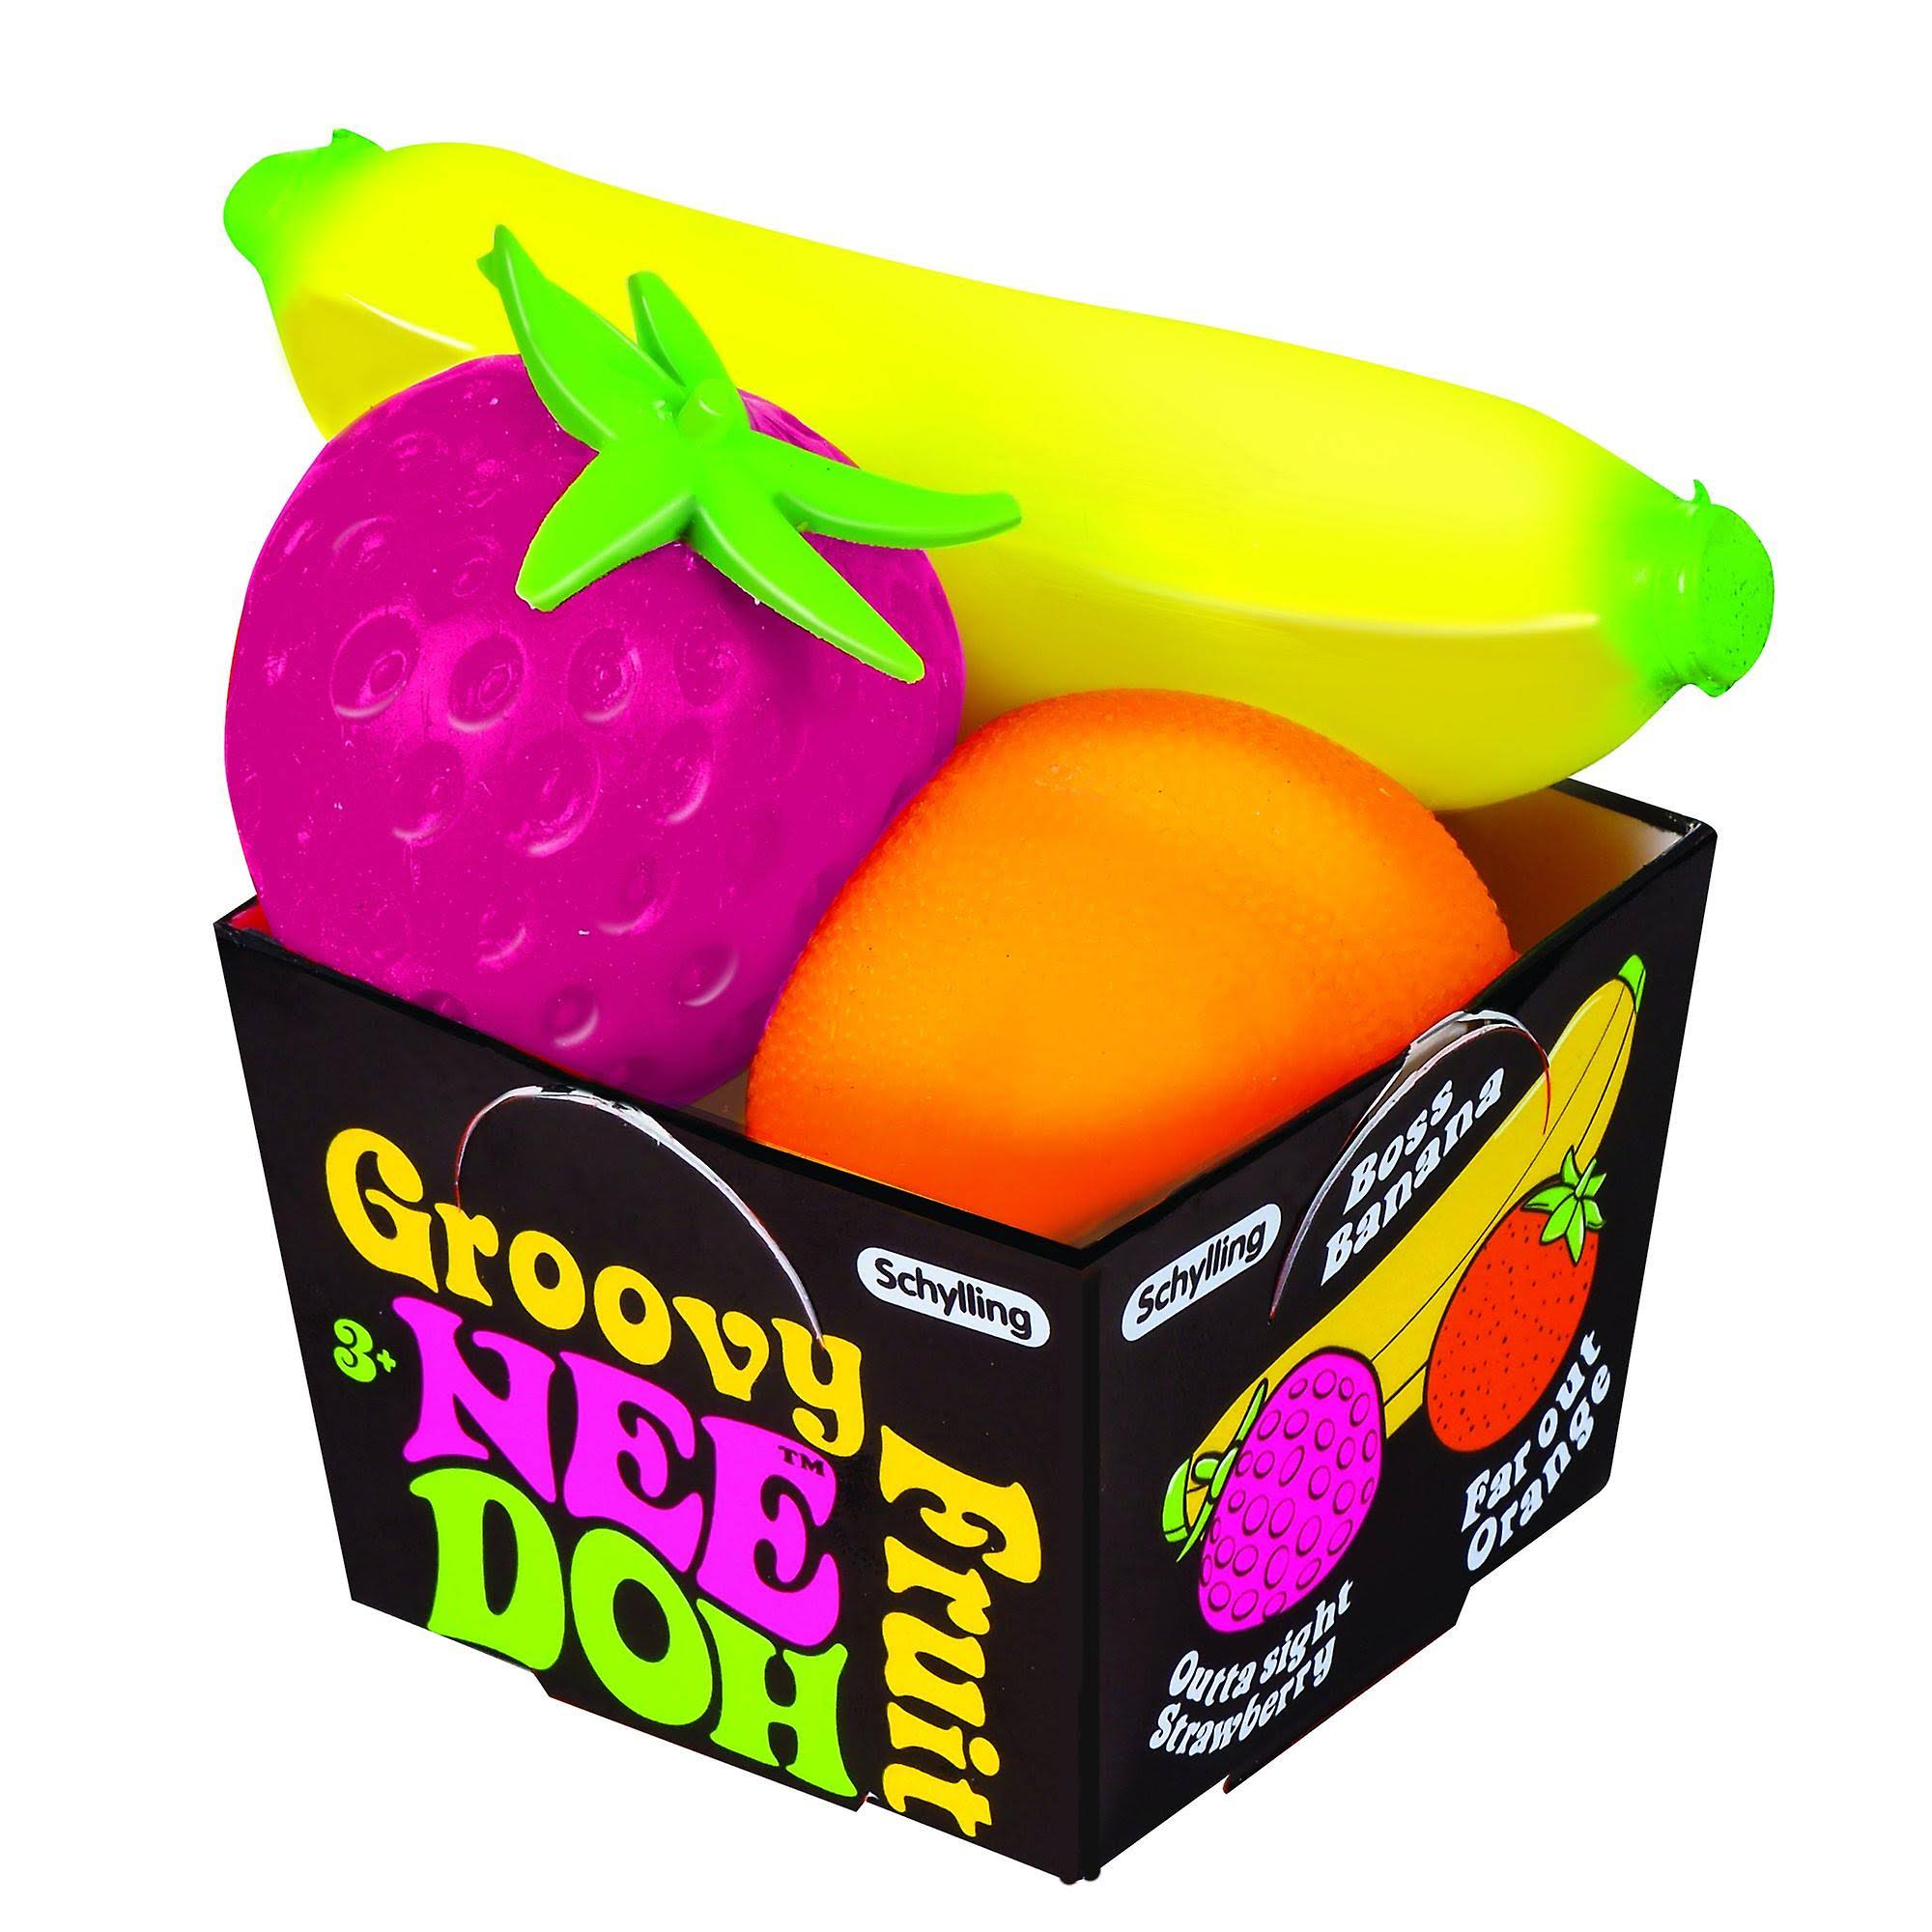 Schylling - groovy fruit nee-doh